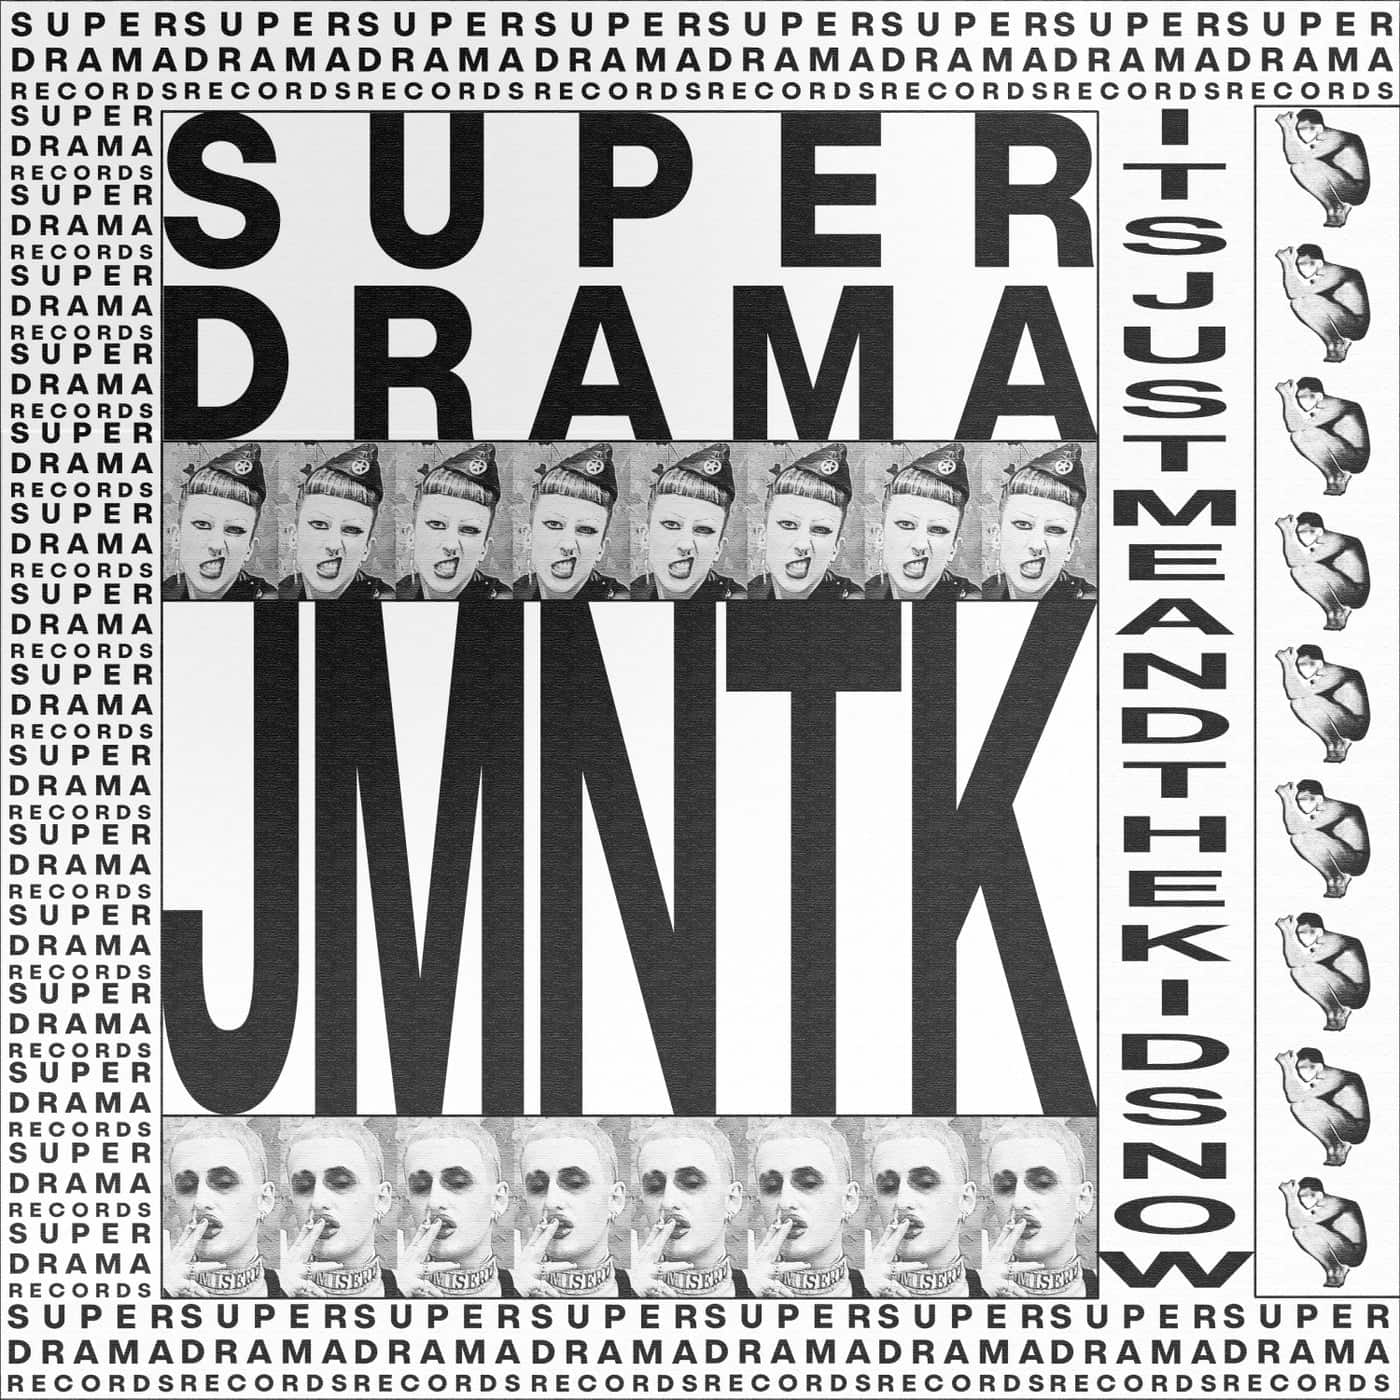 image cover: Super Drama - SDR-010 / SDR010